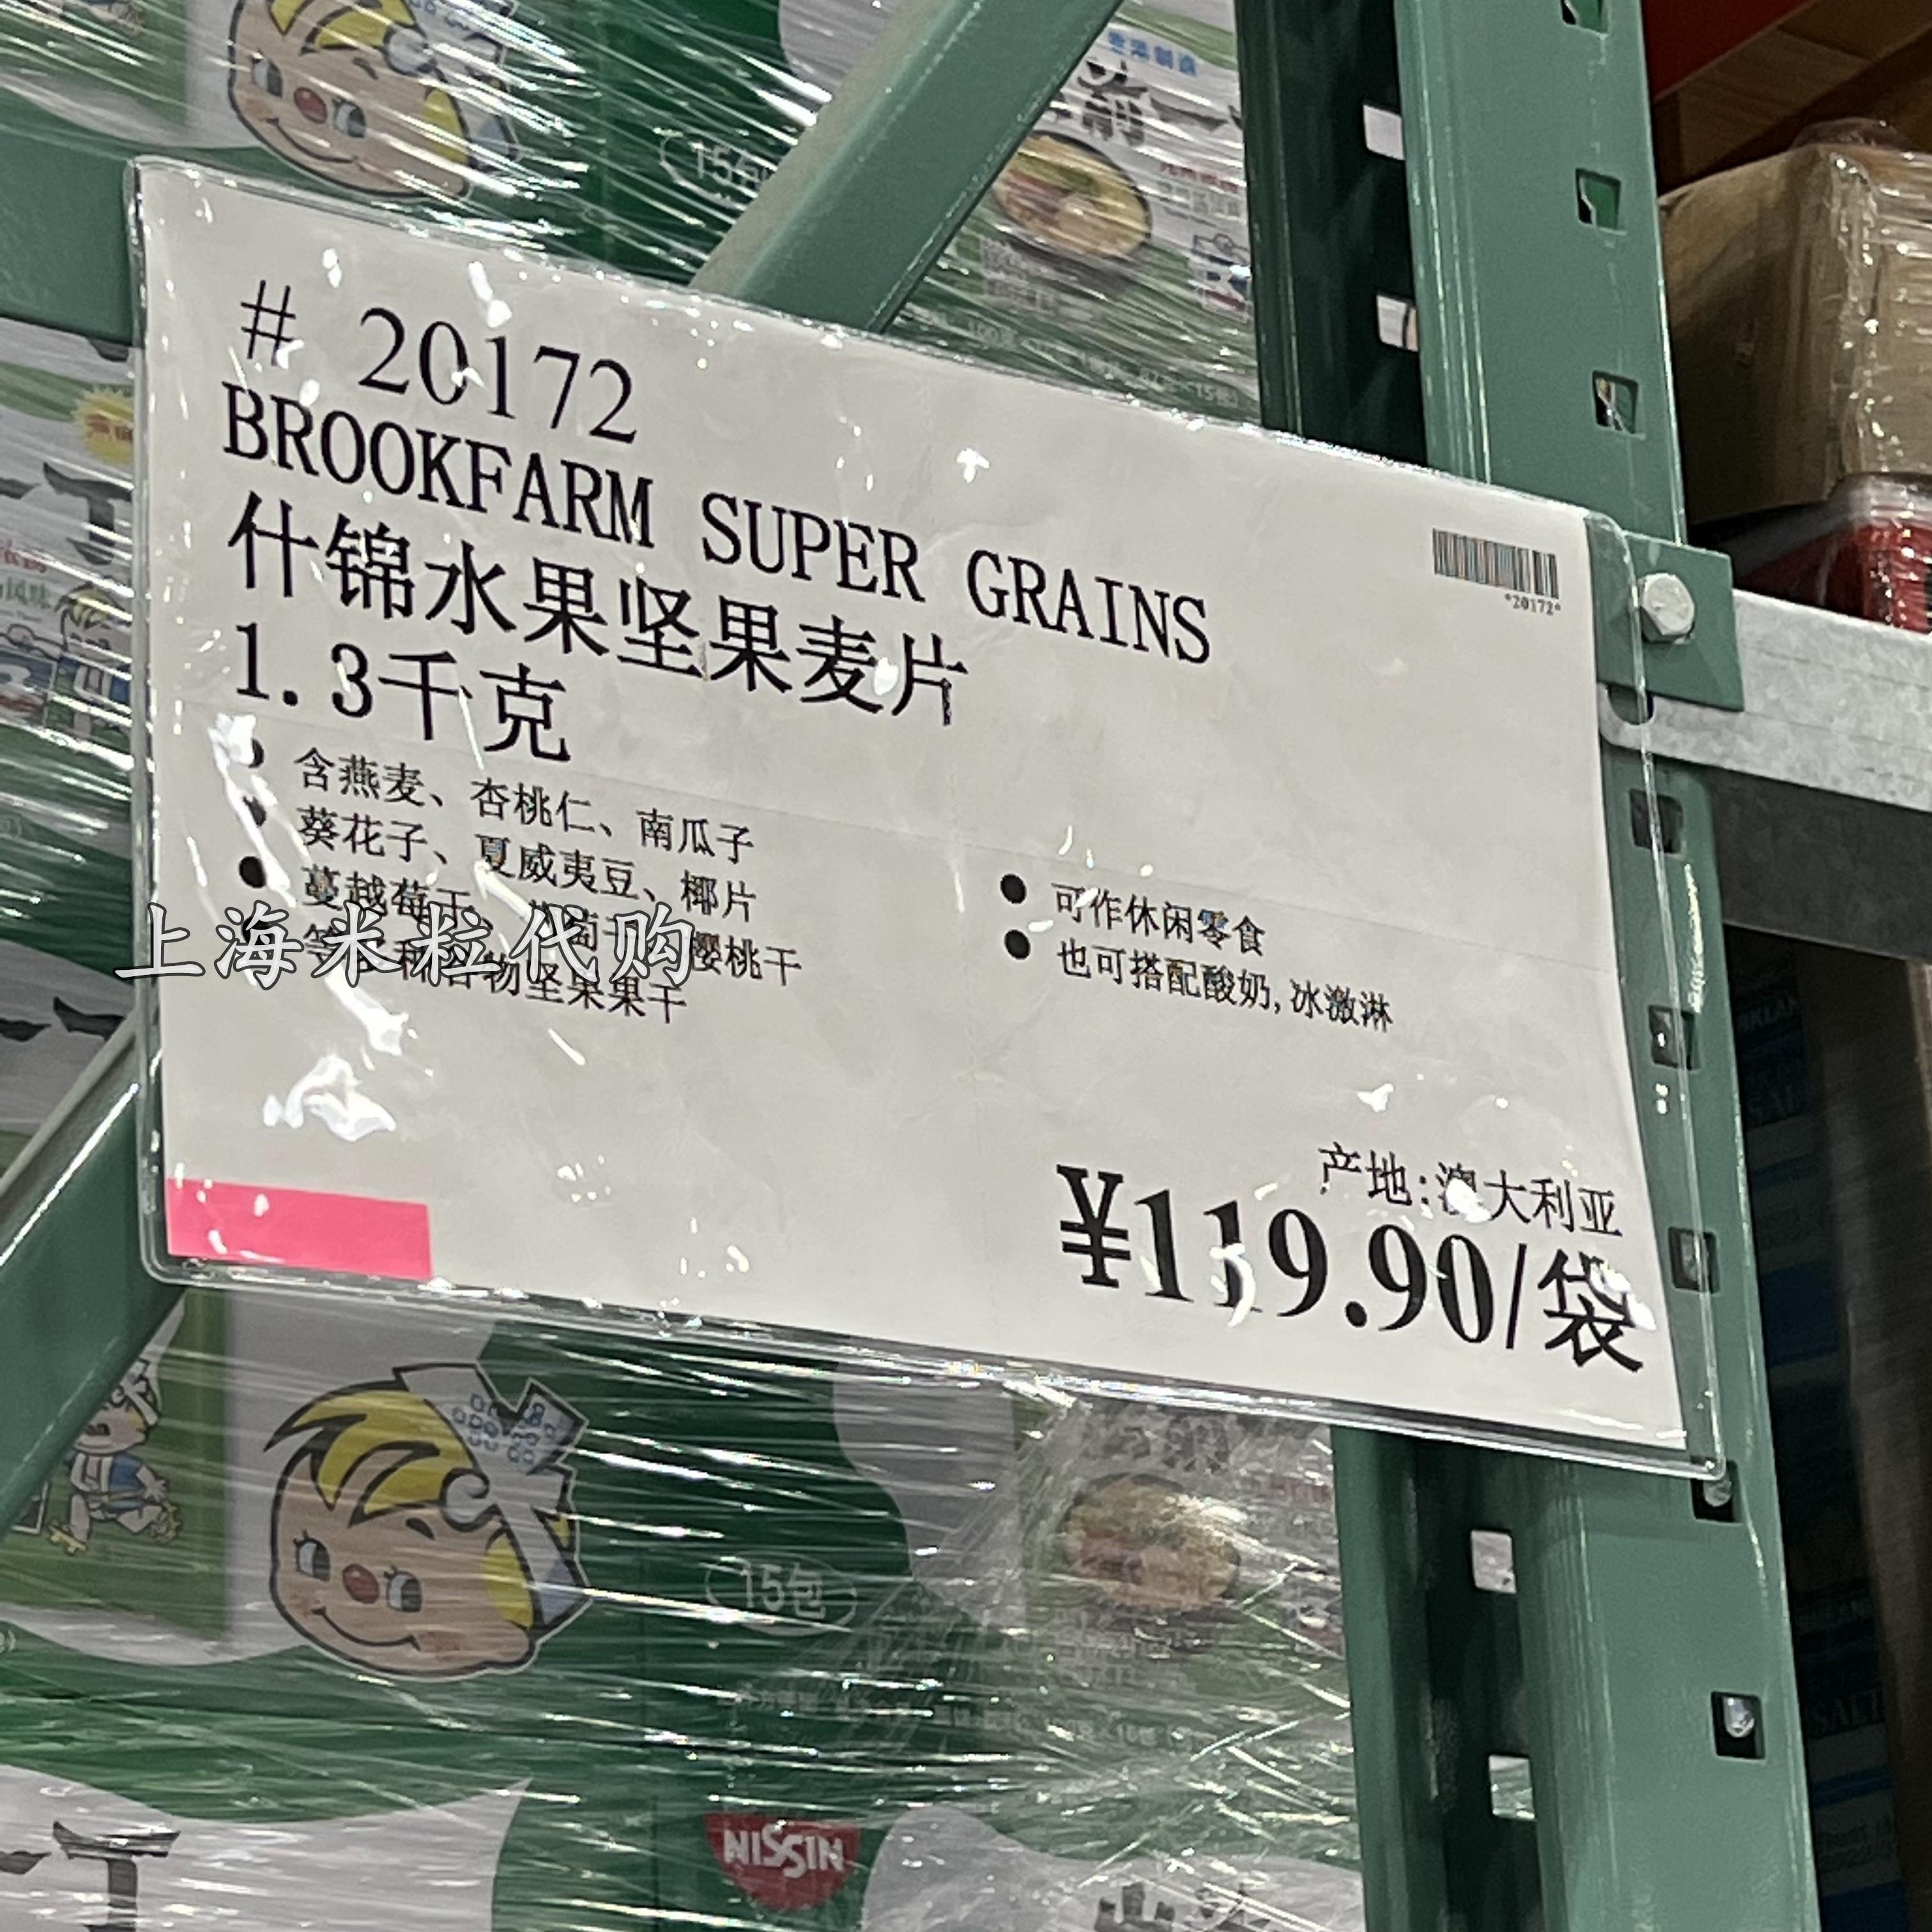 上海costco购Brookfarm椰子味什锦水果坚果谷物土豪麦片1.3kg - 图2